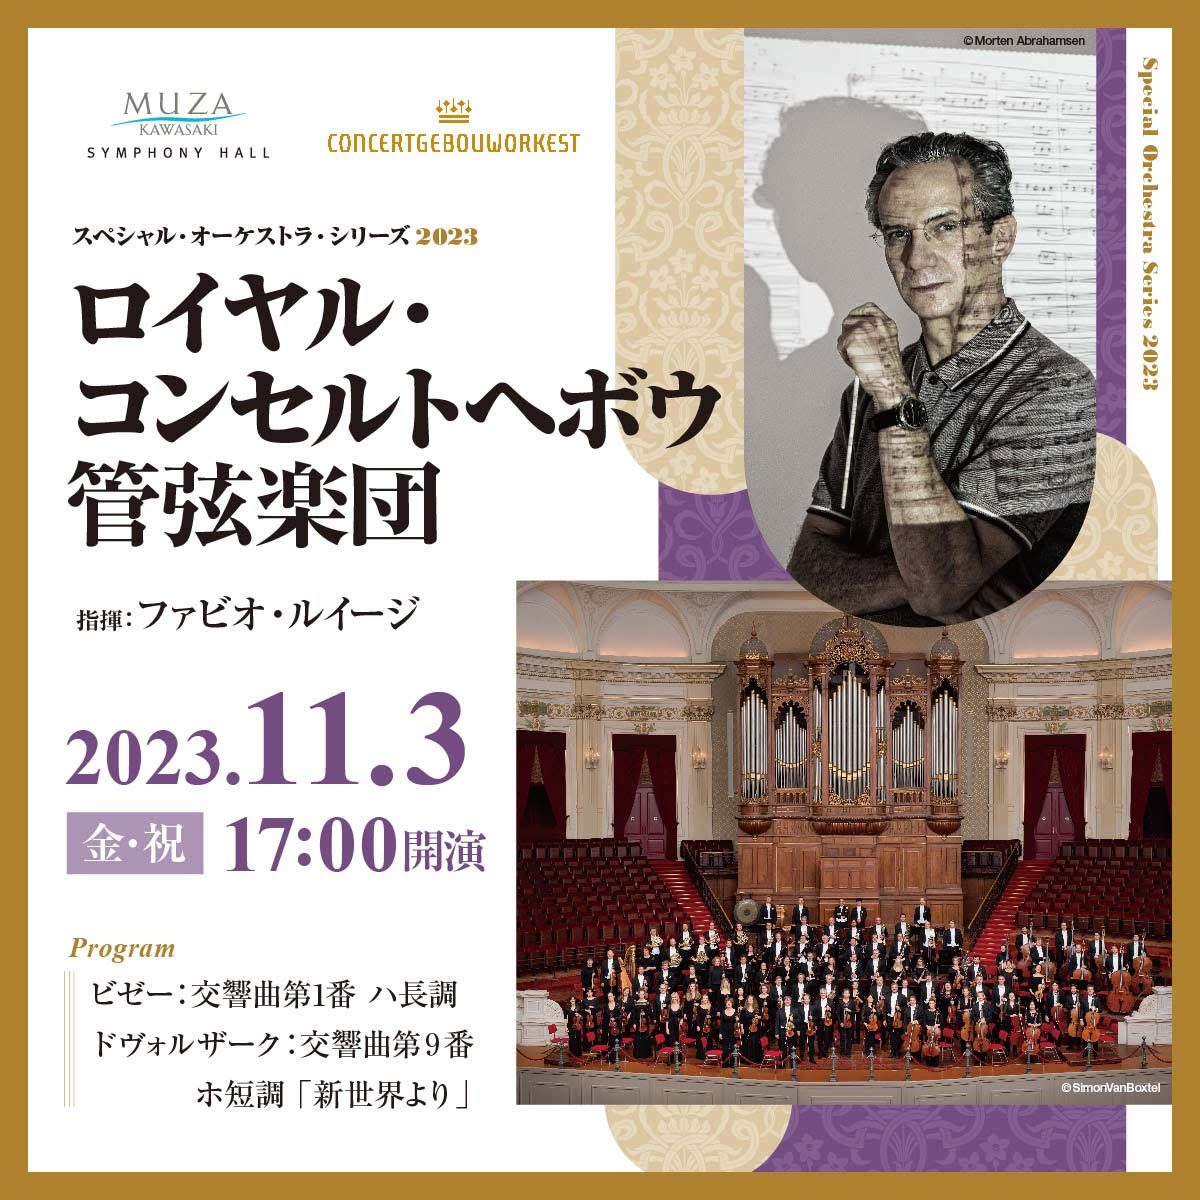 Royal Concertgebouworkest Date/Time Fri 3 Nov 2023 17:00 start Link to details